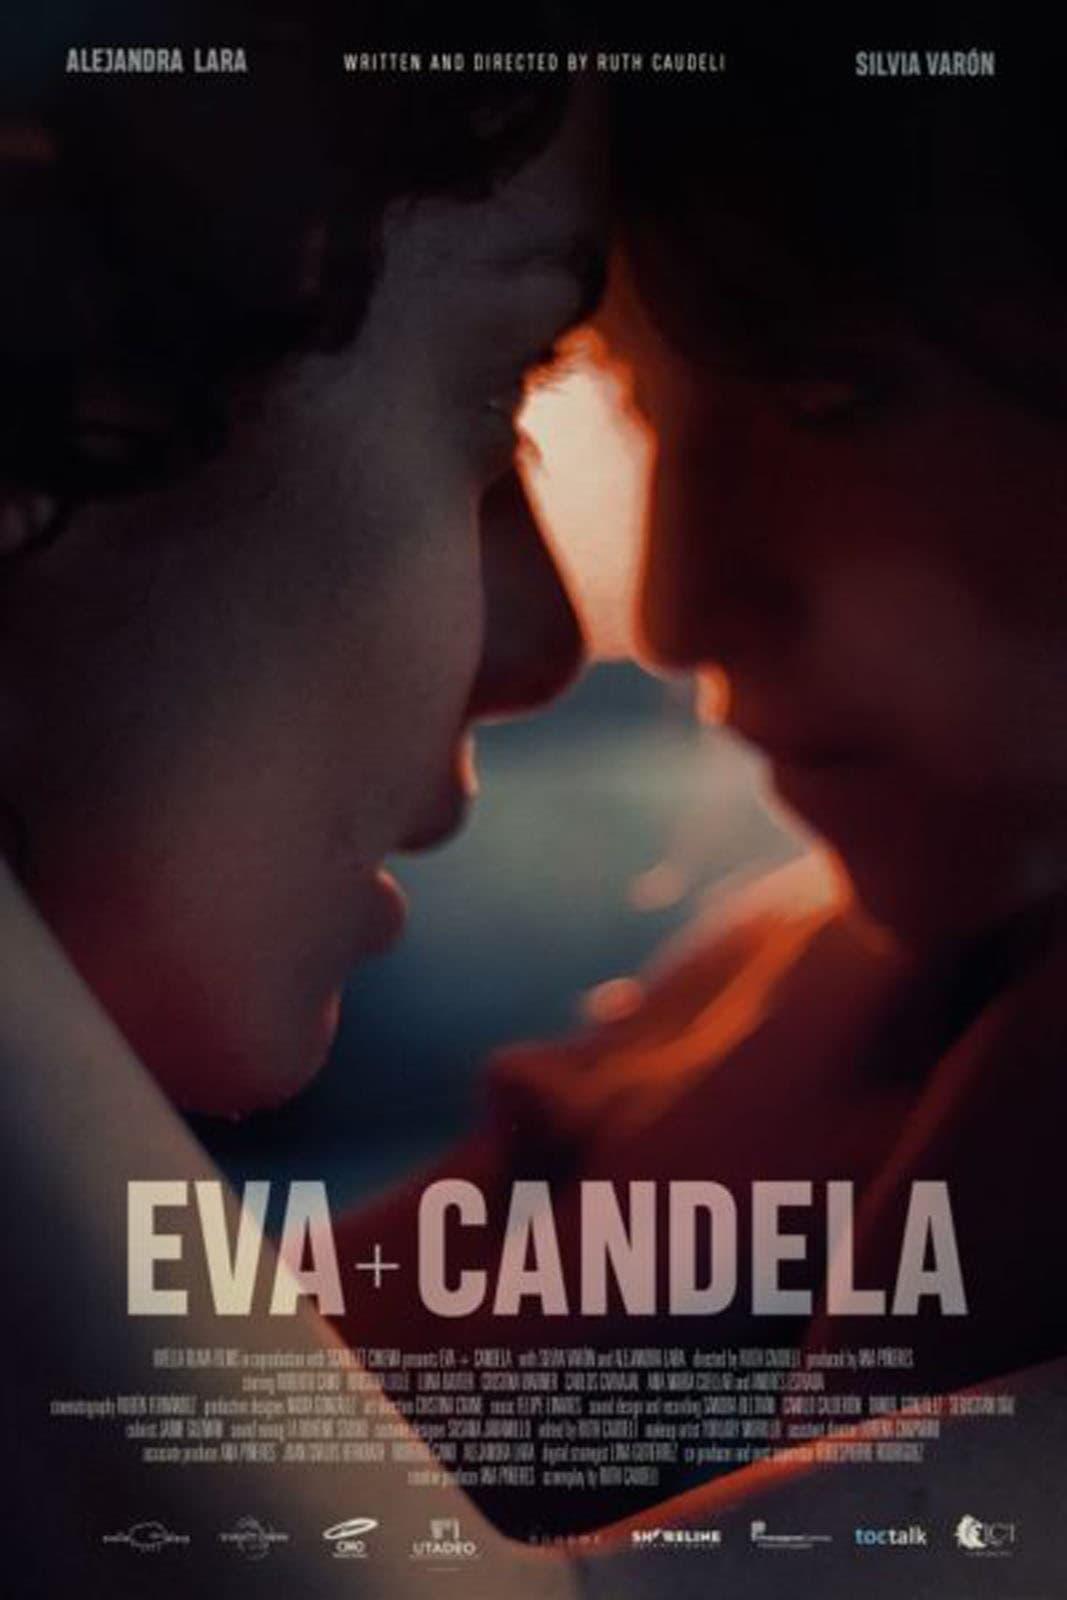 Eva + Candela poster